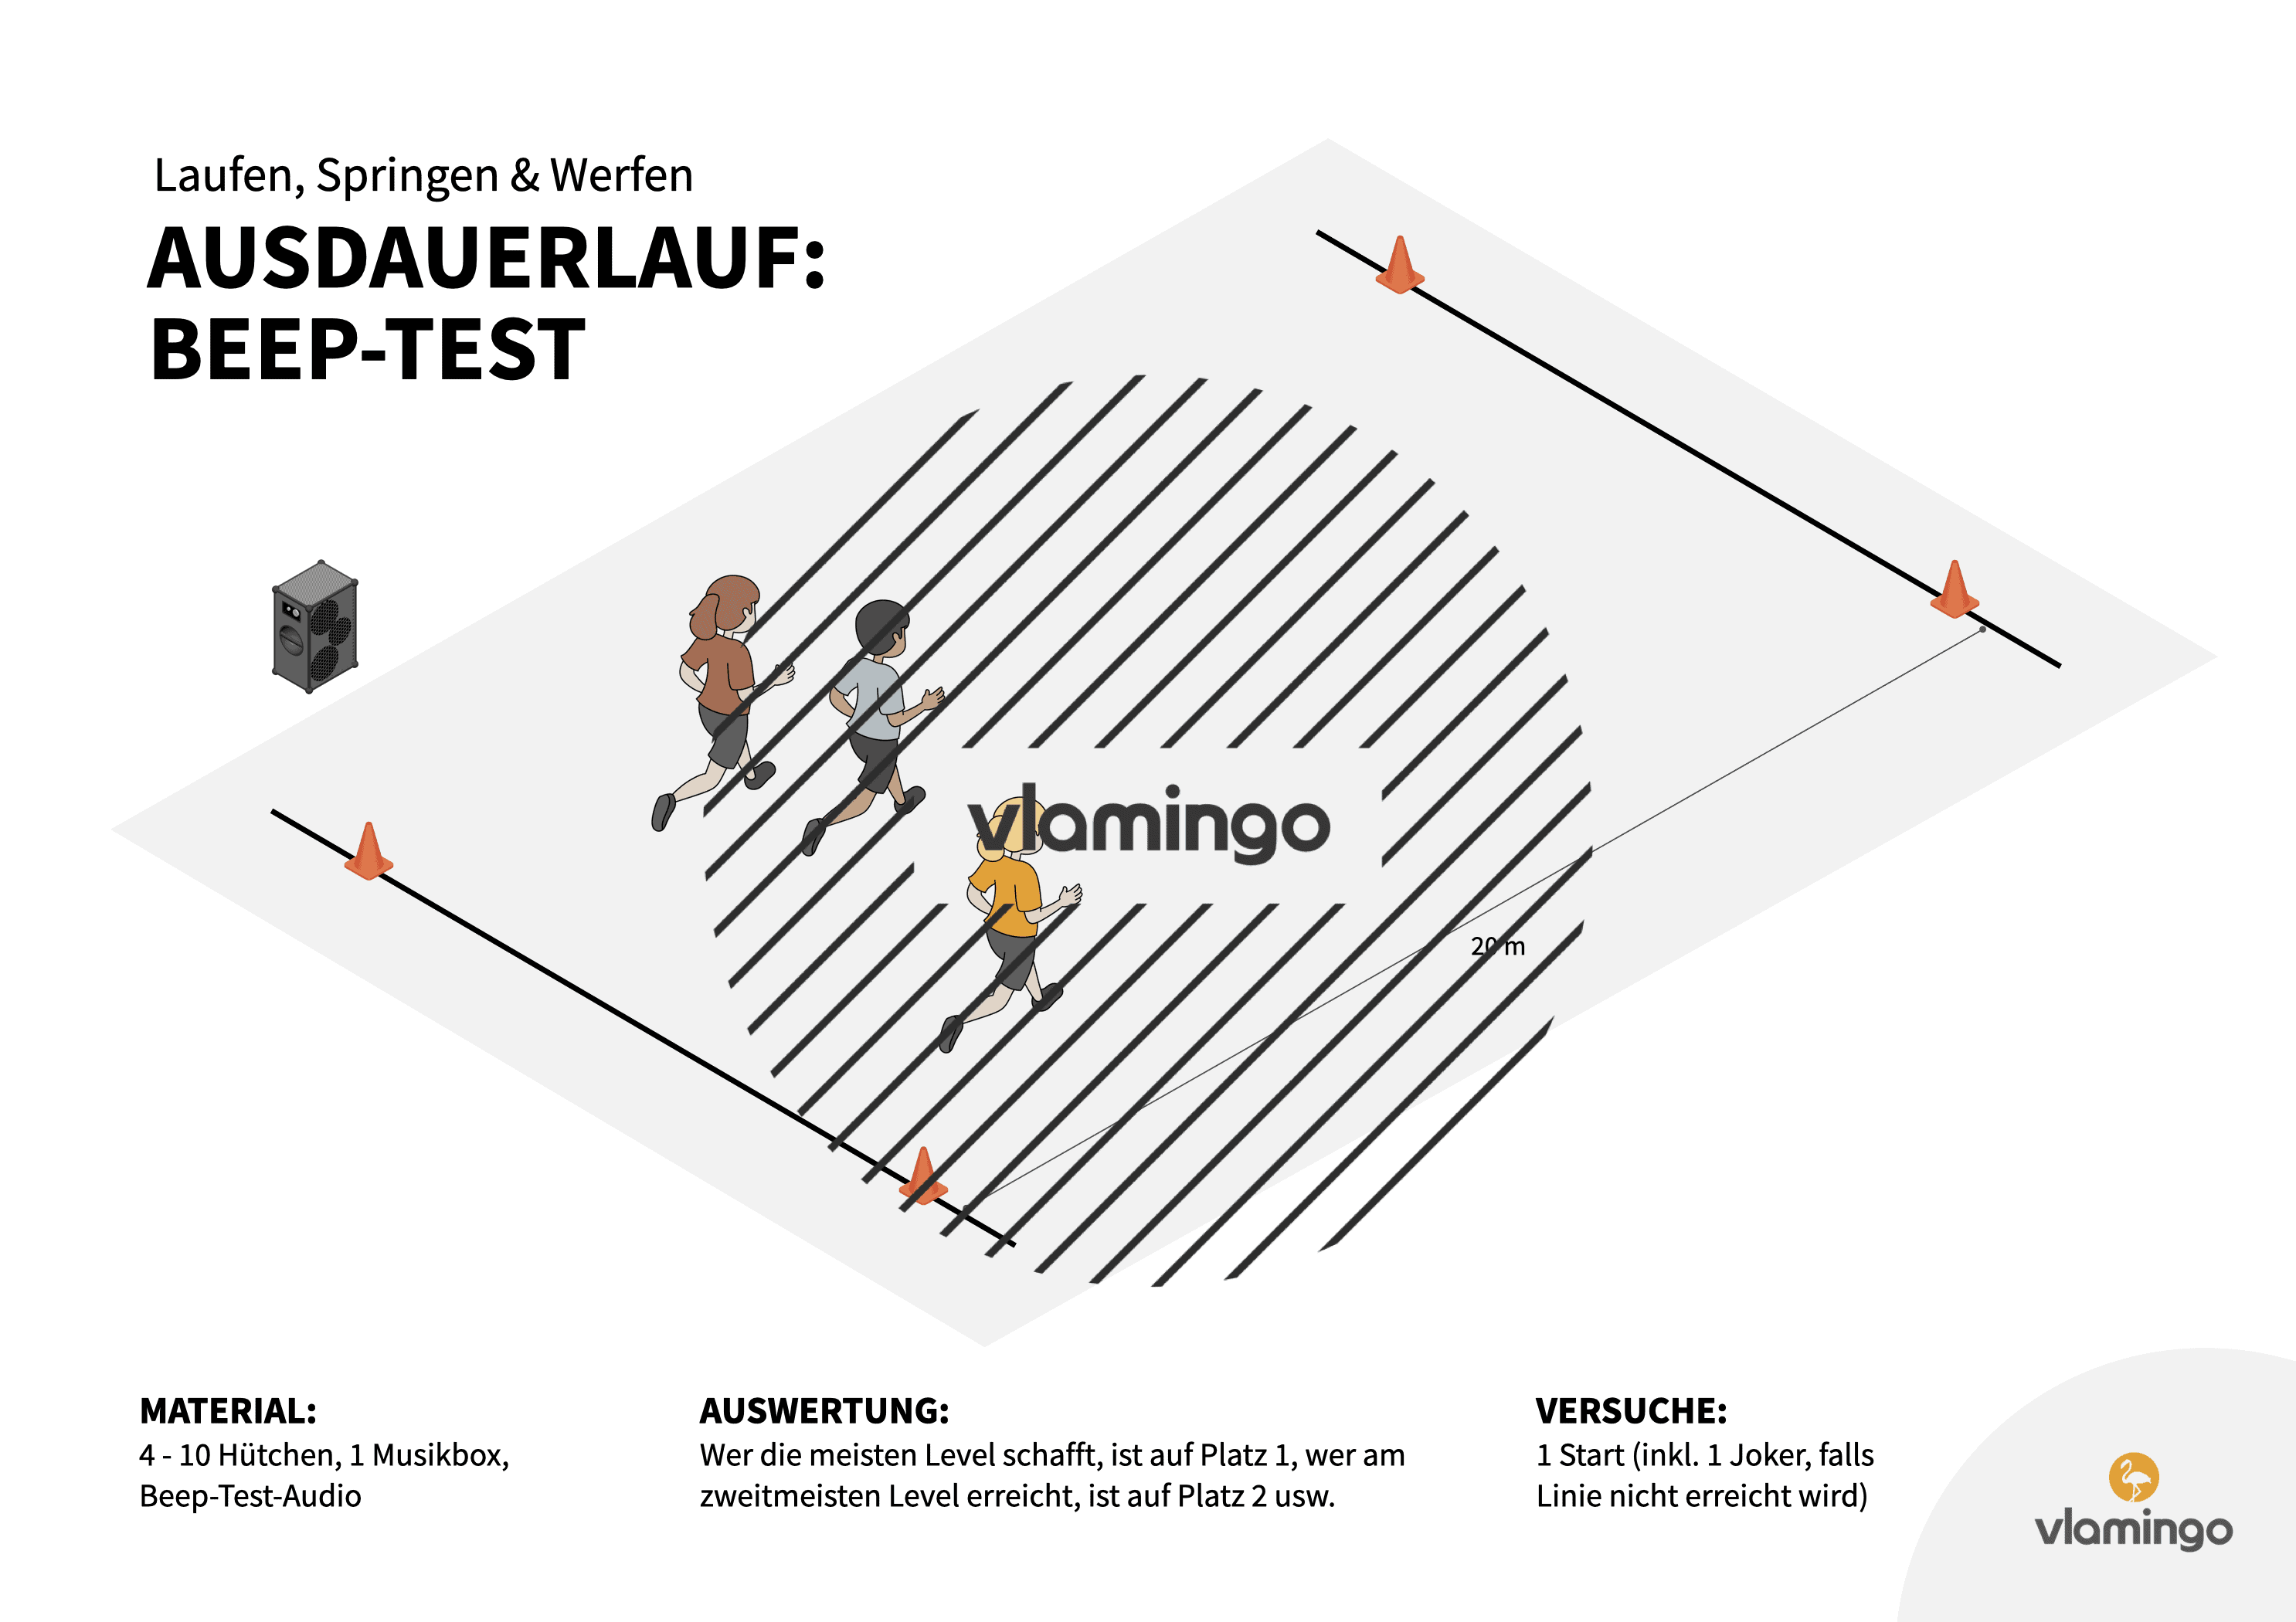 Leichtathletik - Ausdauerlauf - Beep-Test